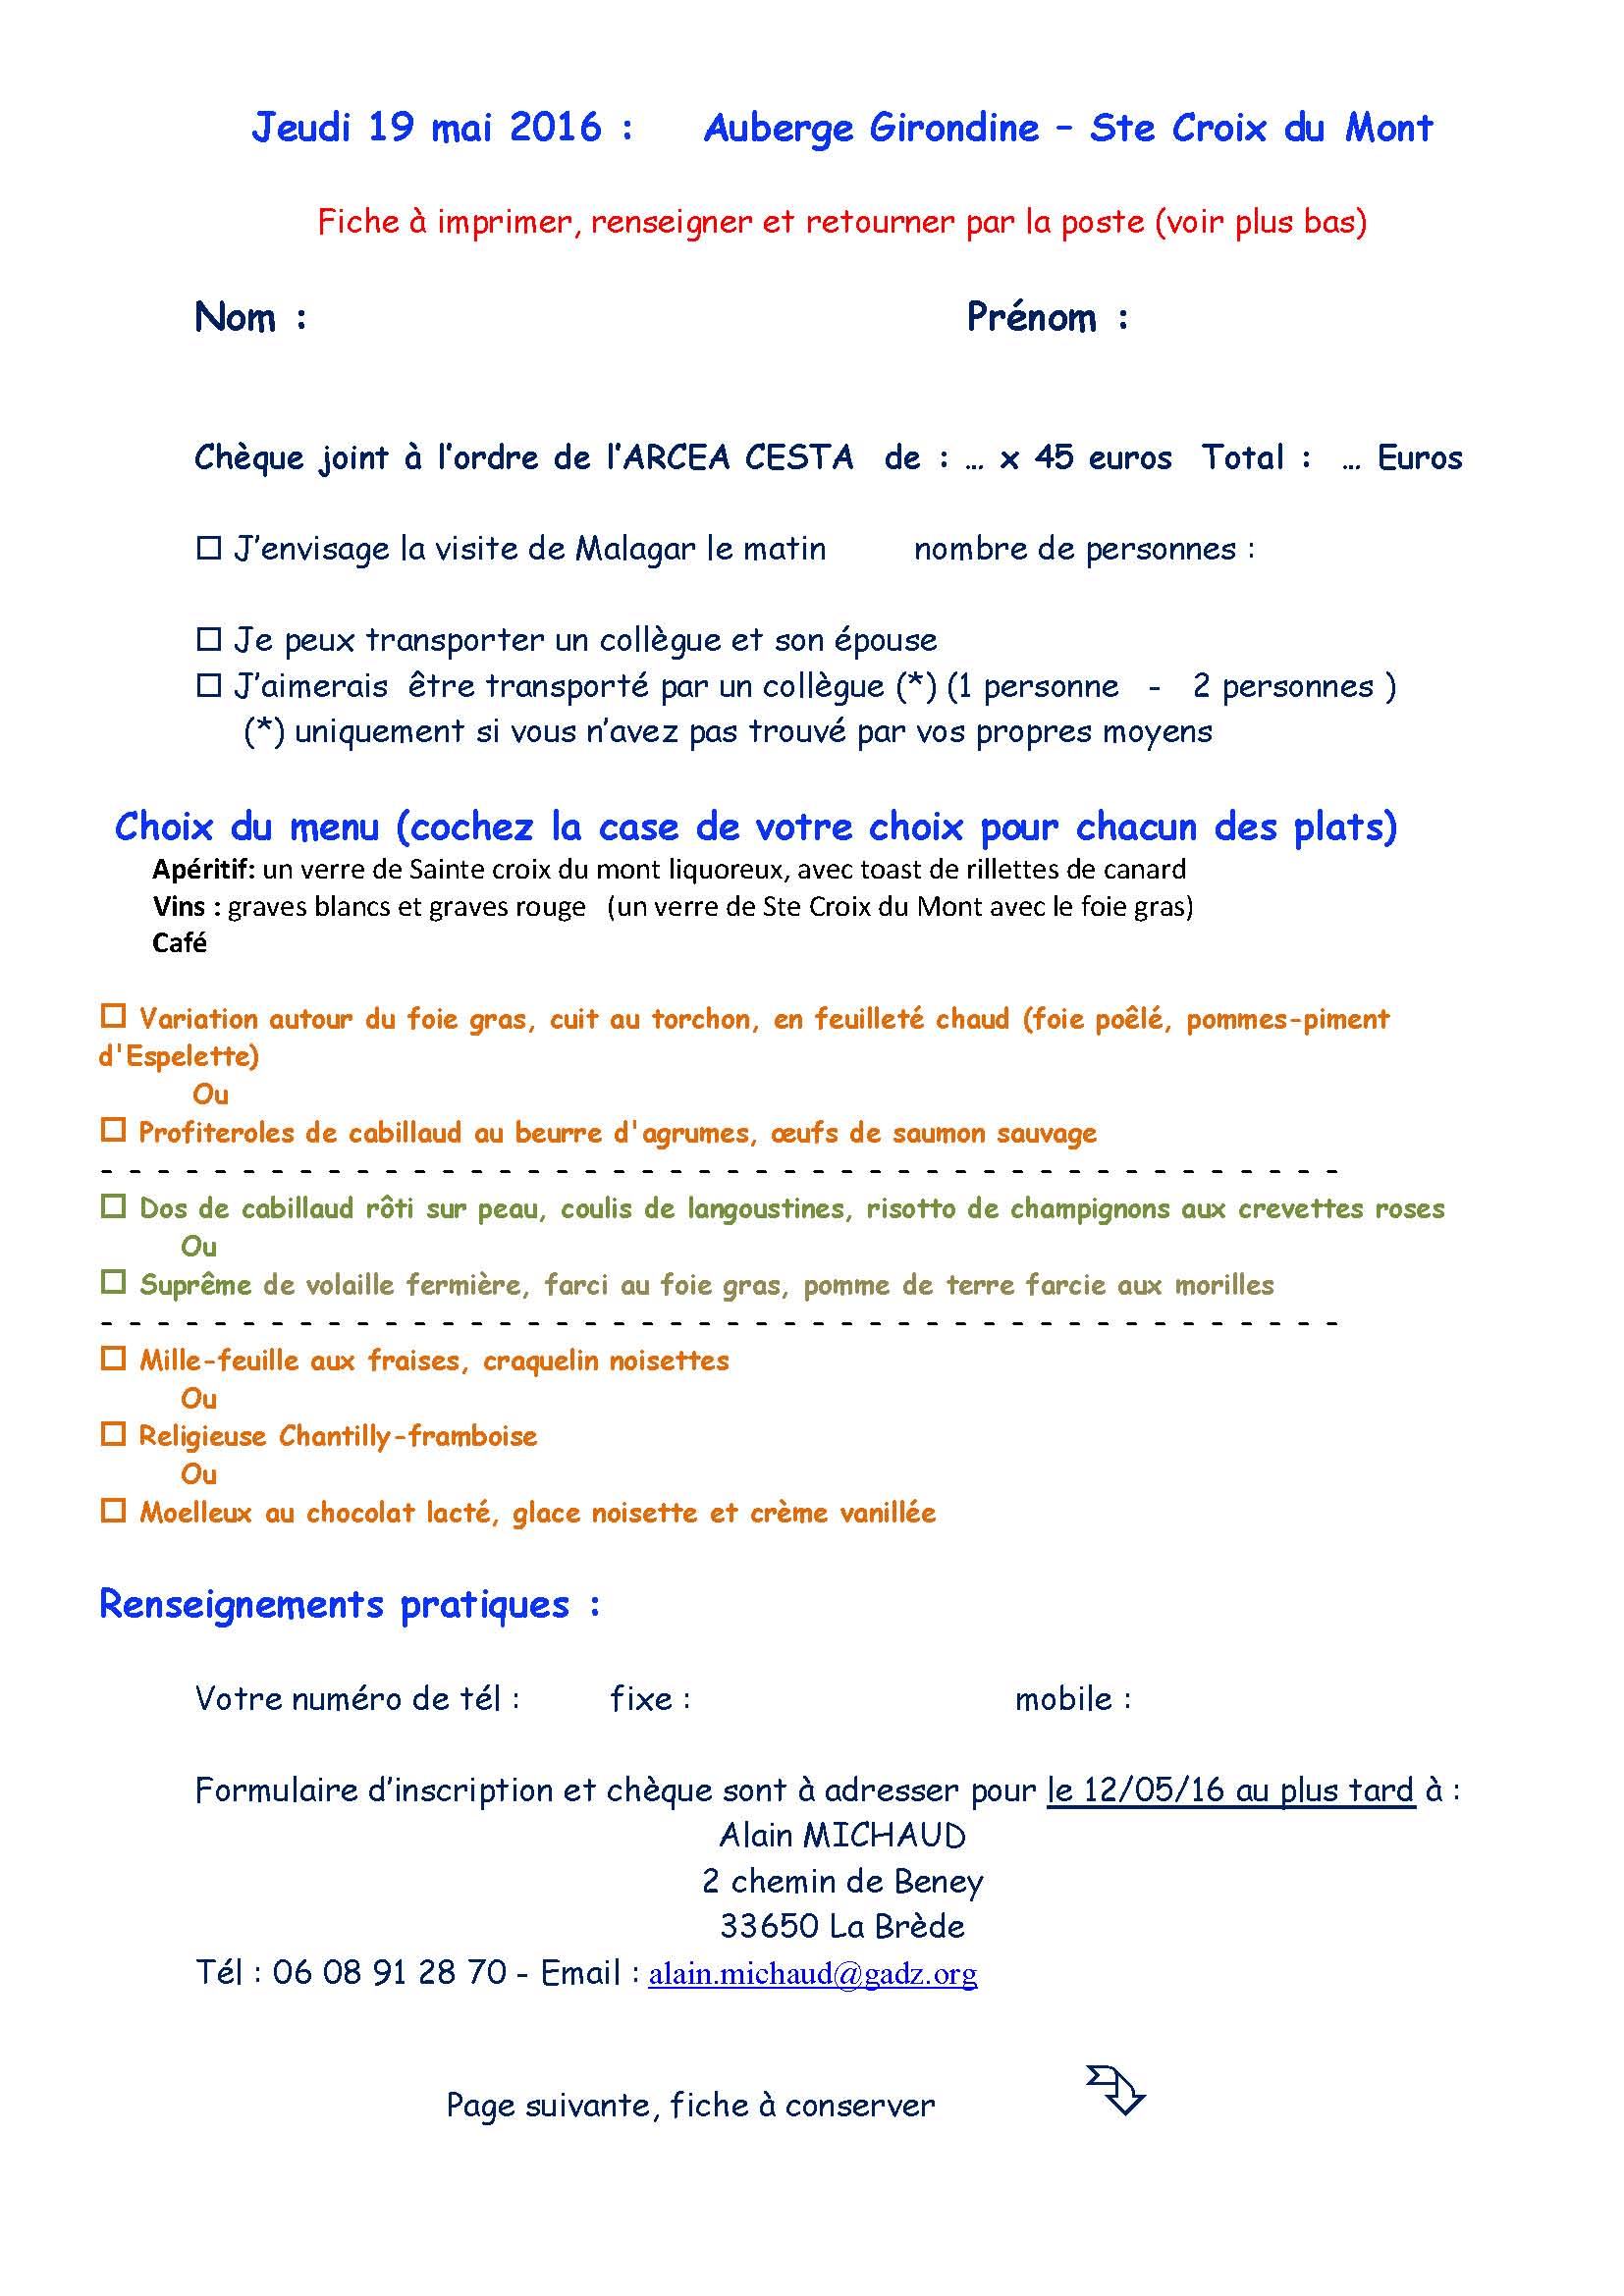 20160519 Sortie Ste Croix du Mont bulletin dinscription v2 Page 1